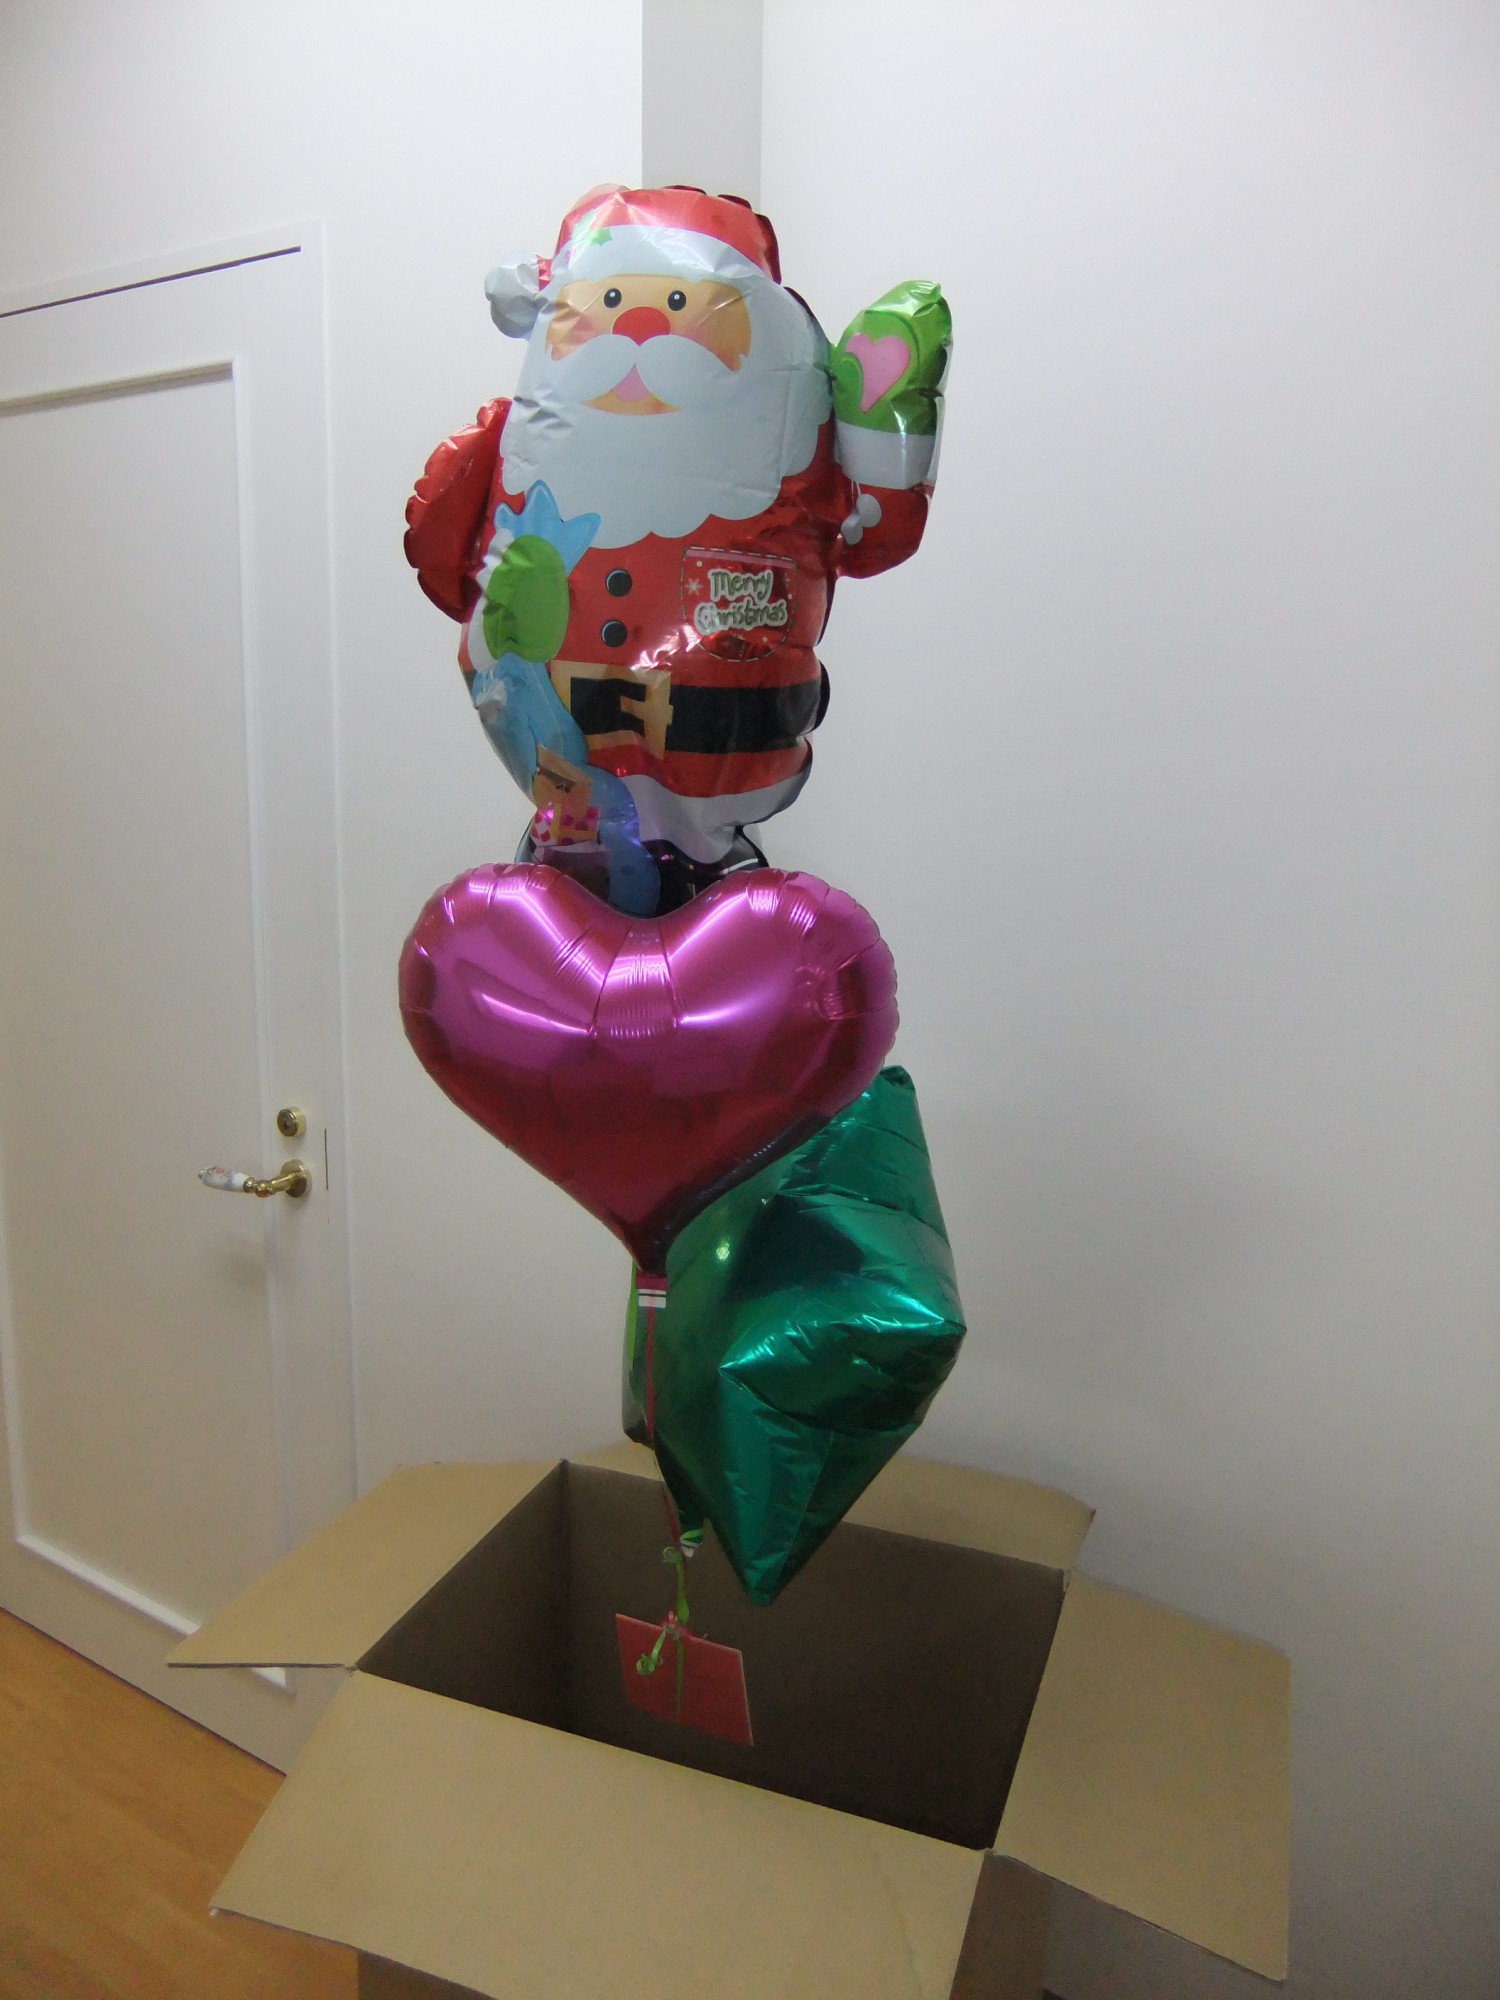 「メリーXmas! 」サンタクロースが大きな箱からポヨっと出てきてごあいさつ♪（箱の大きさ　約75×37×50センチ）